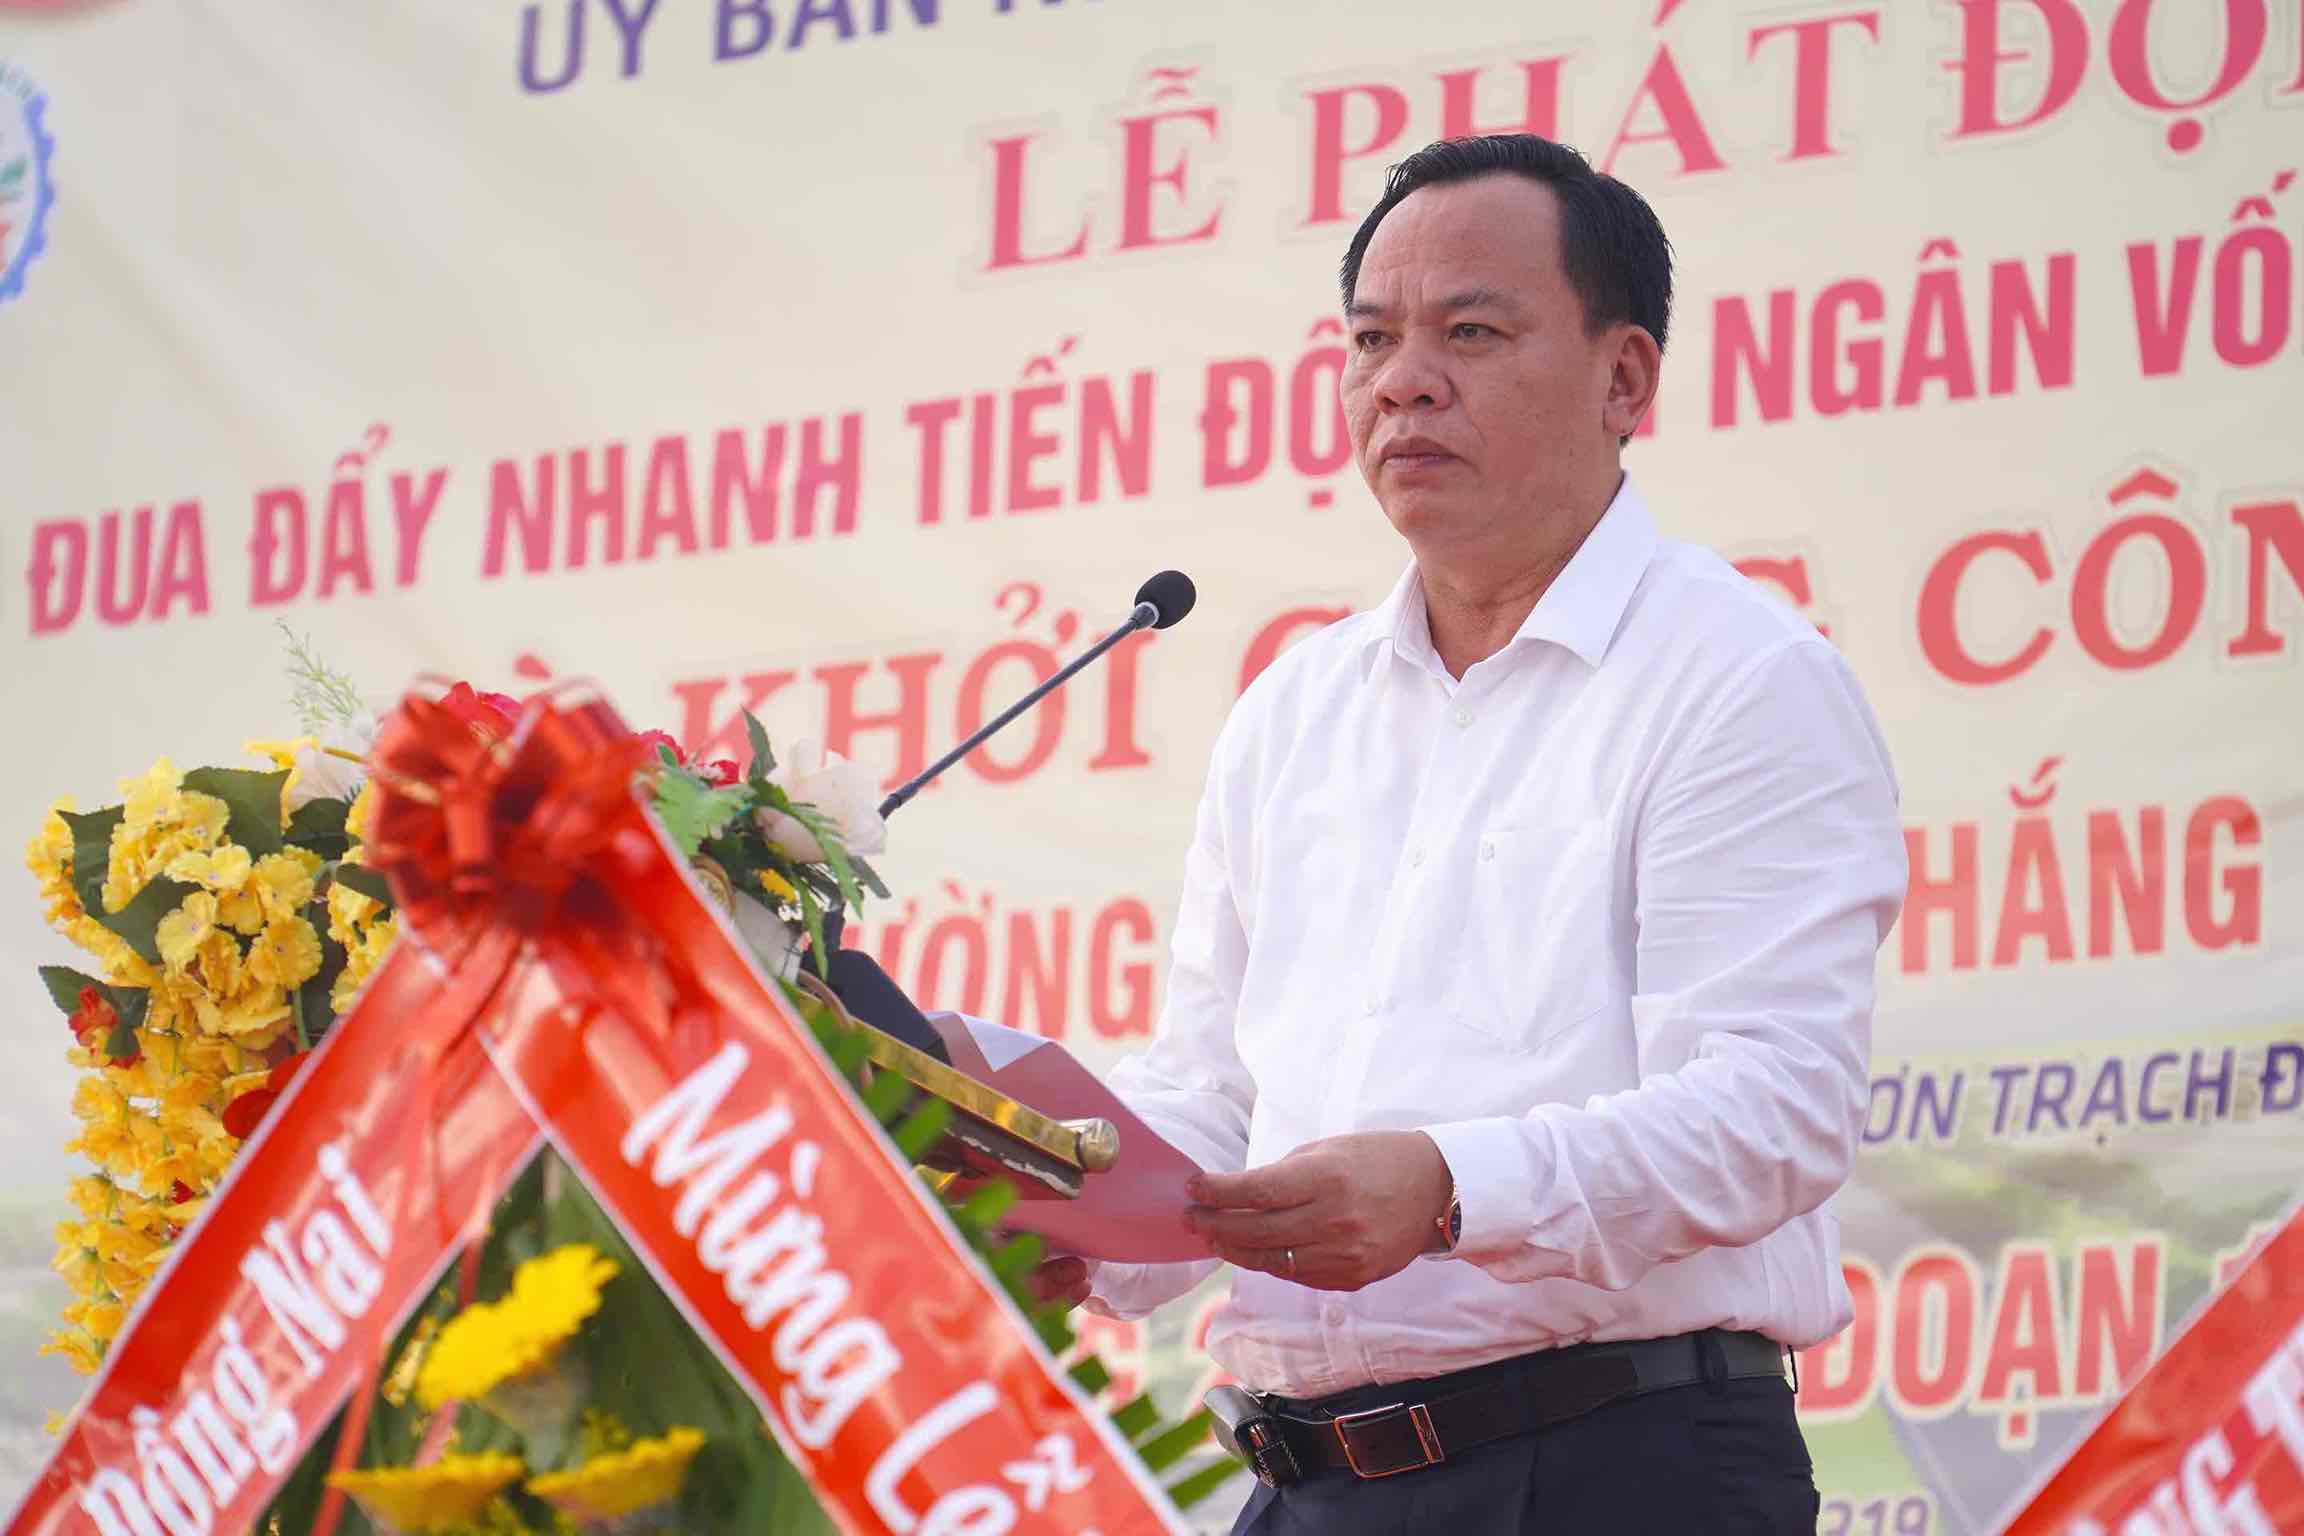 Ông Võ Tấn Đức - Quyền Chủ tịch UBND tỉnh Đồng Nai phát biểu tại buổi lễ khởi công. Ảnh: Hà Anh Chiến